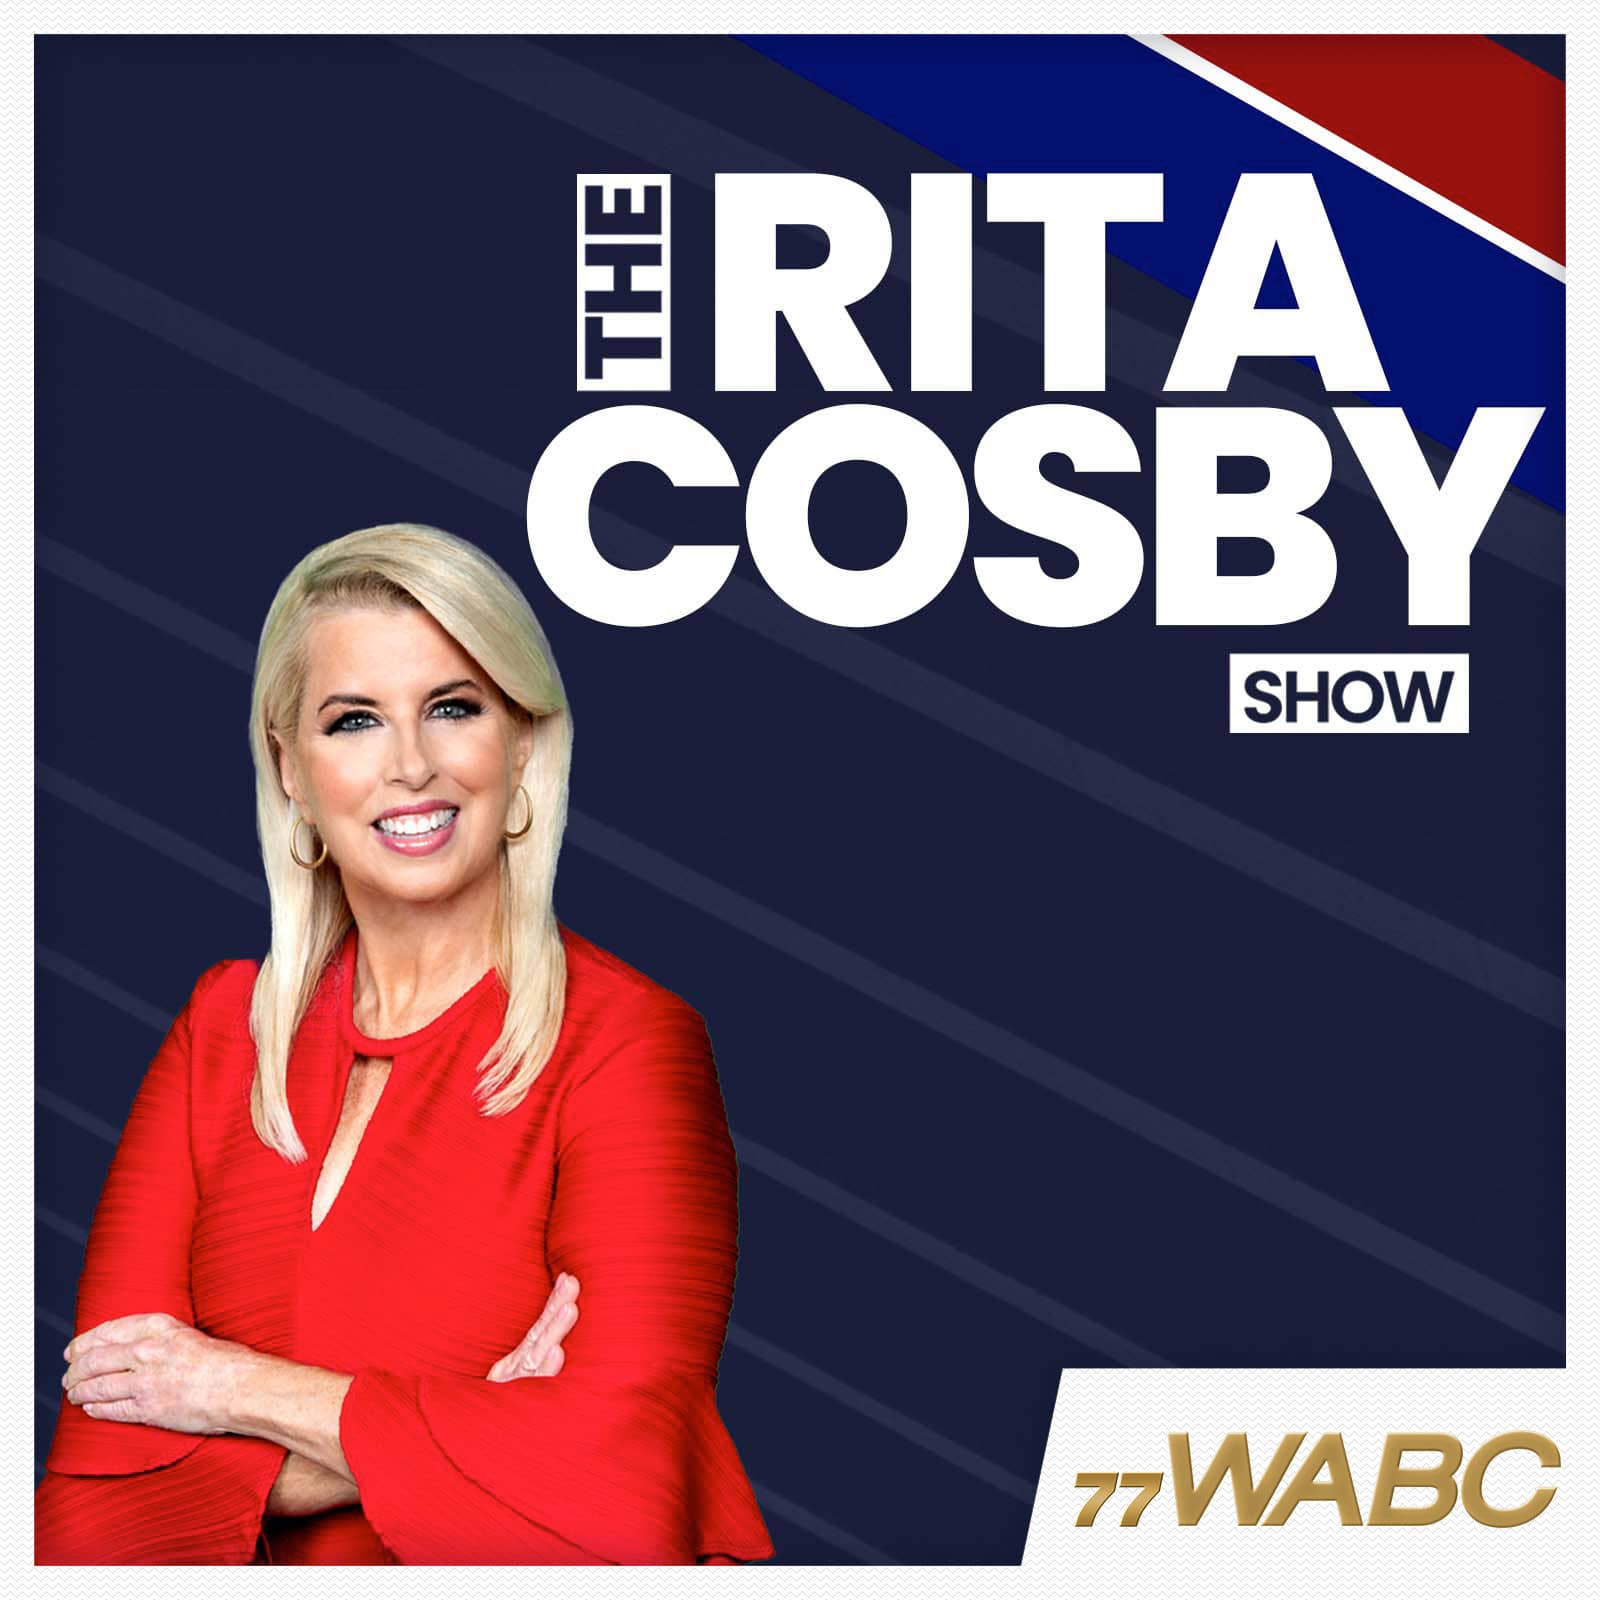 rita-cosby-podcast-new-logo628767